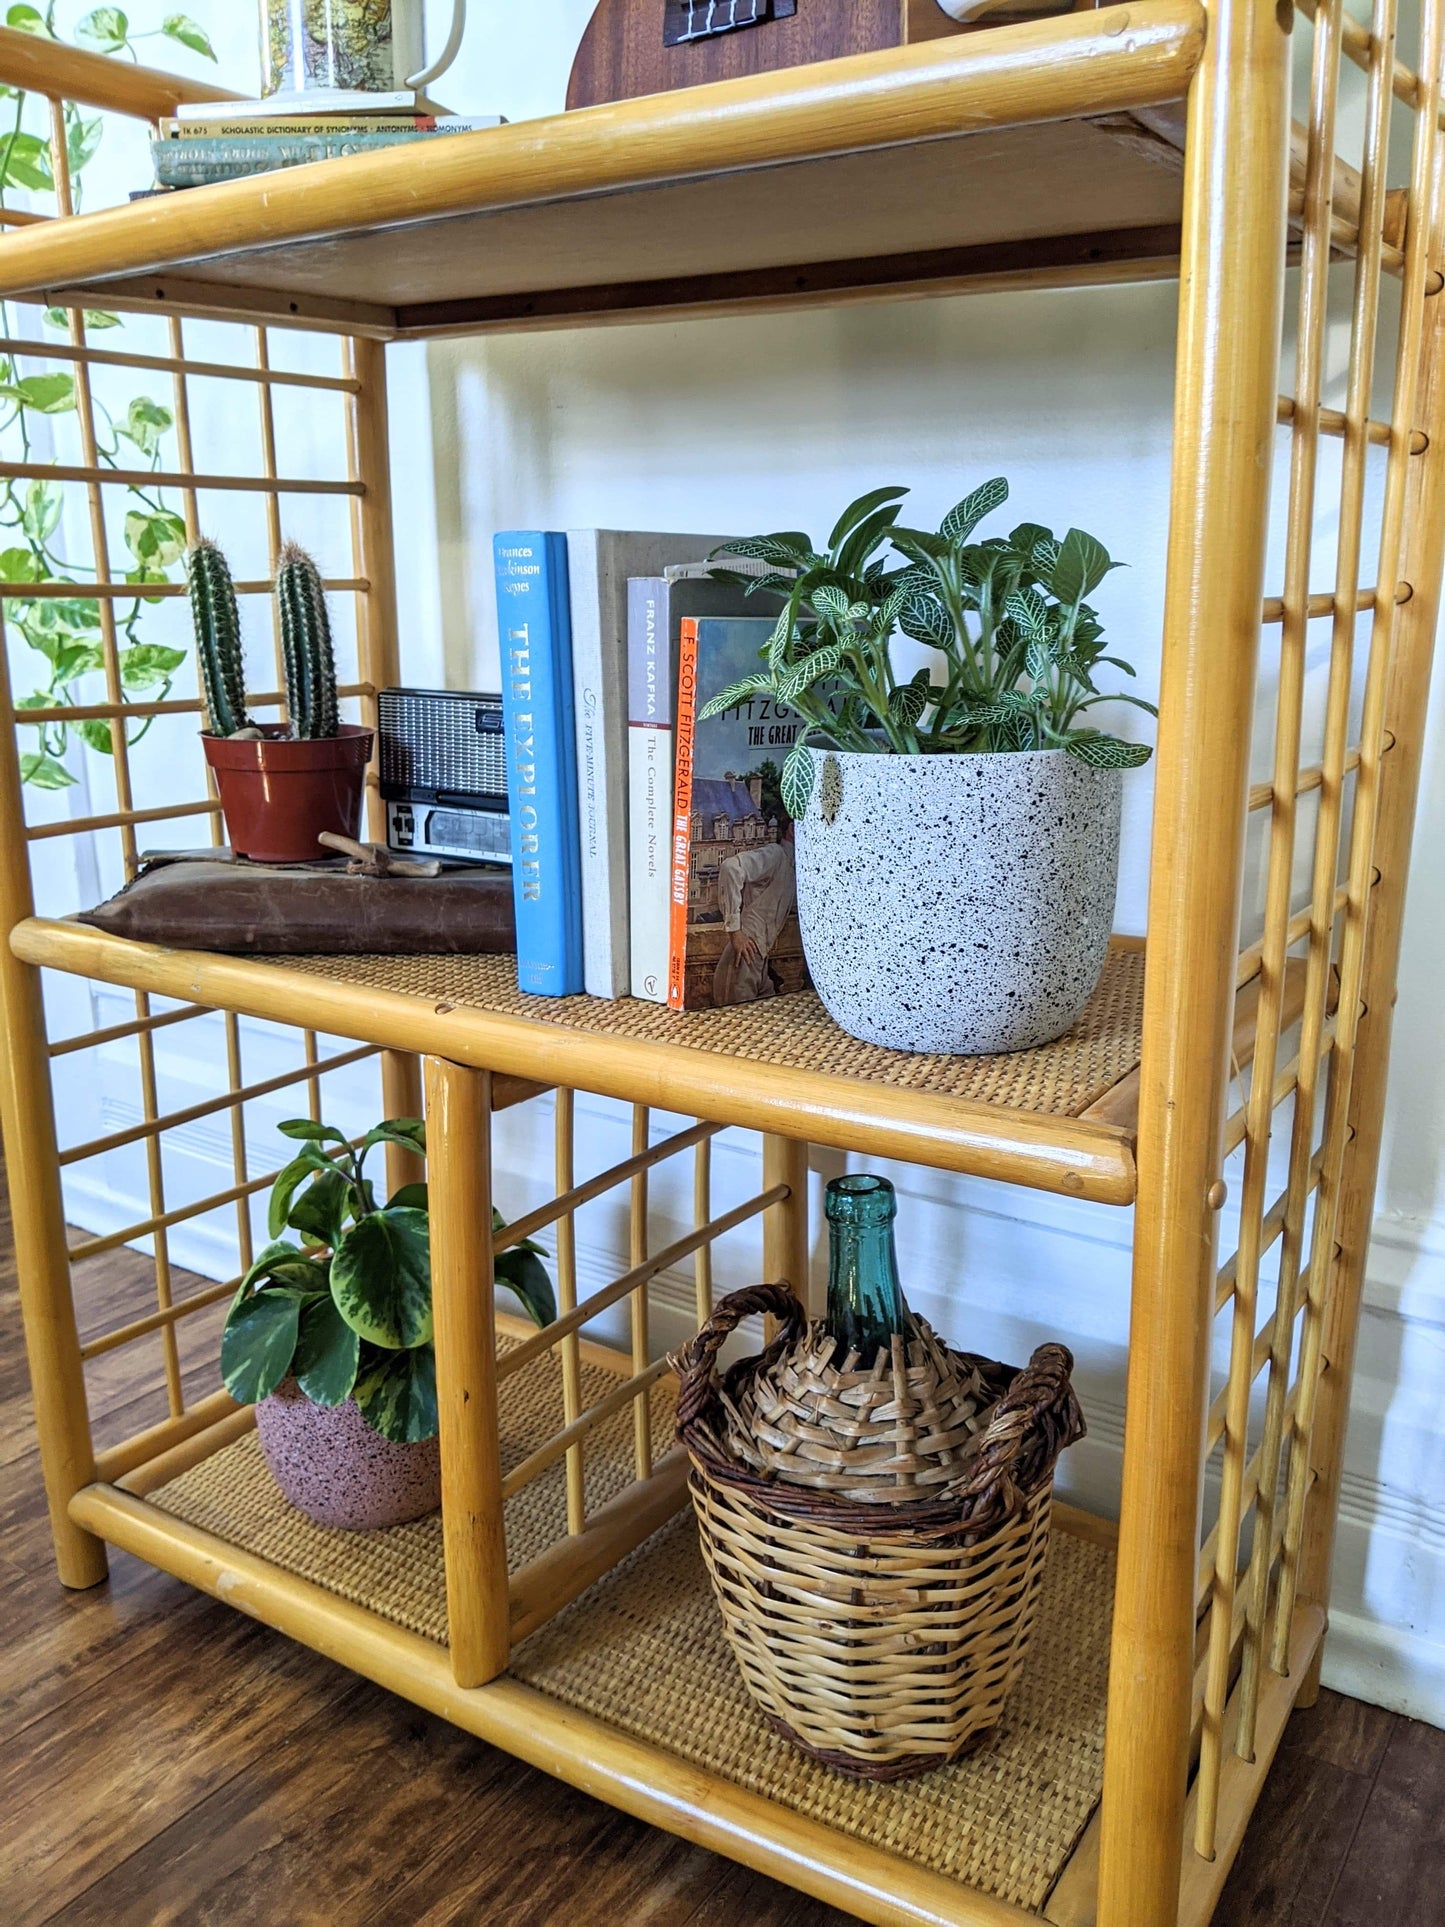 The Barbara Bamboo Shelf